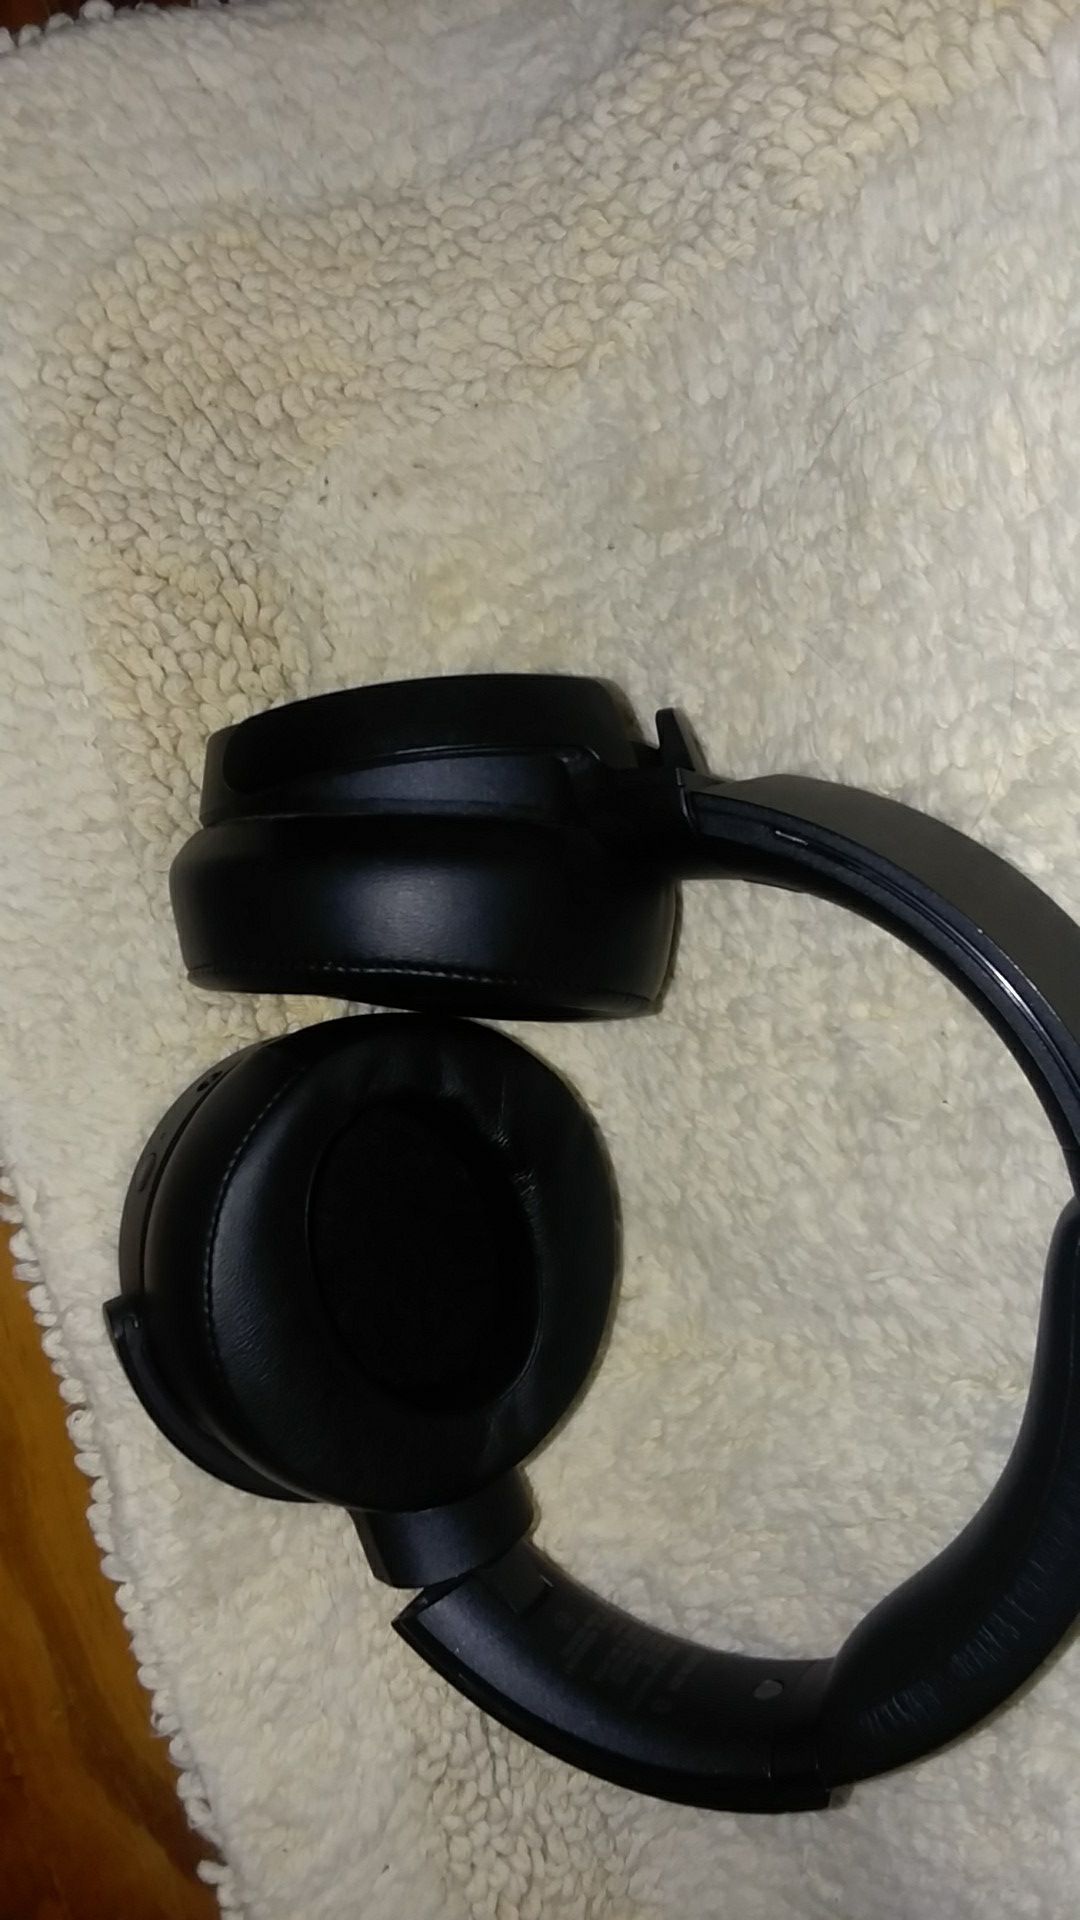 Sony noise reducing wireless headphones